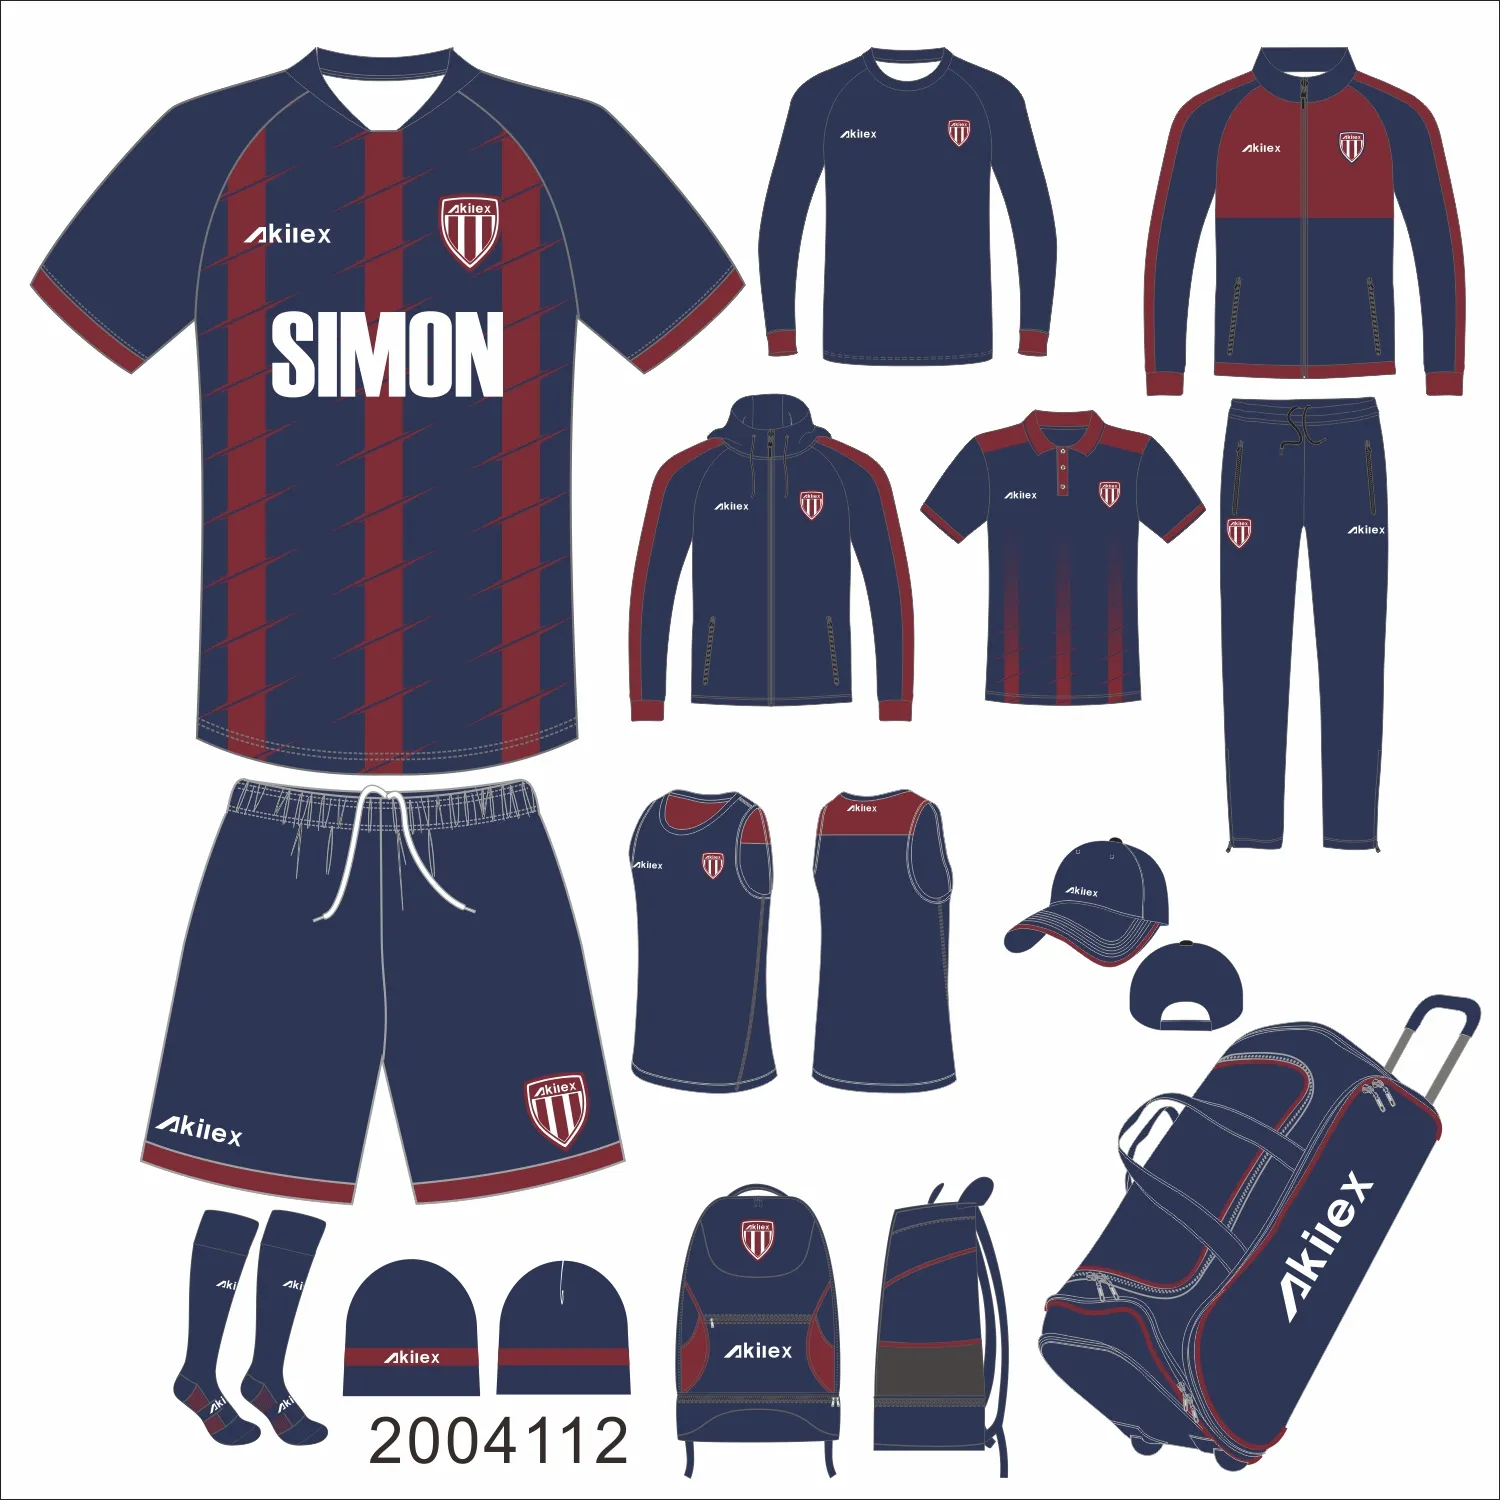 Custom neue design hohe qualität fabrik Original fußball vollen satz fußball team einheitliche ausbildung männer fußball kit für verkauf